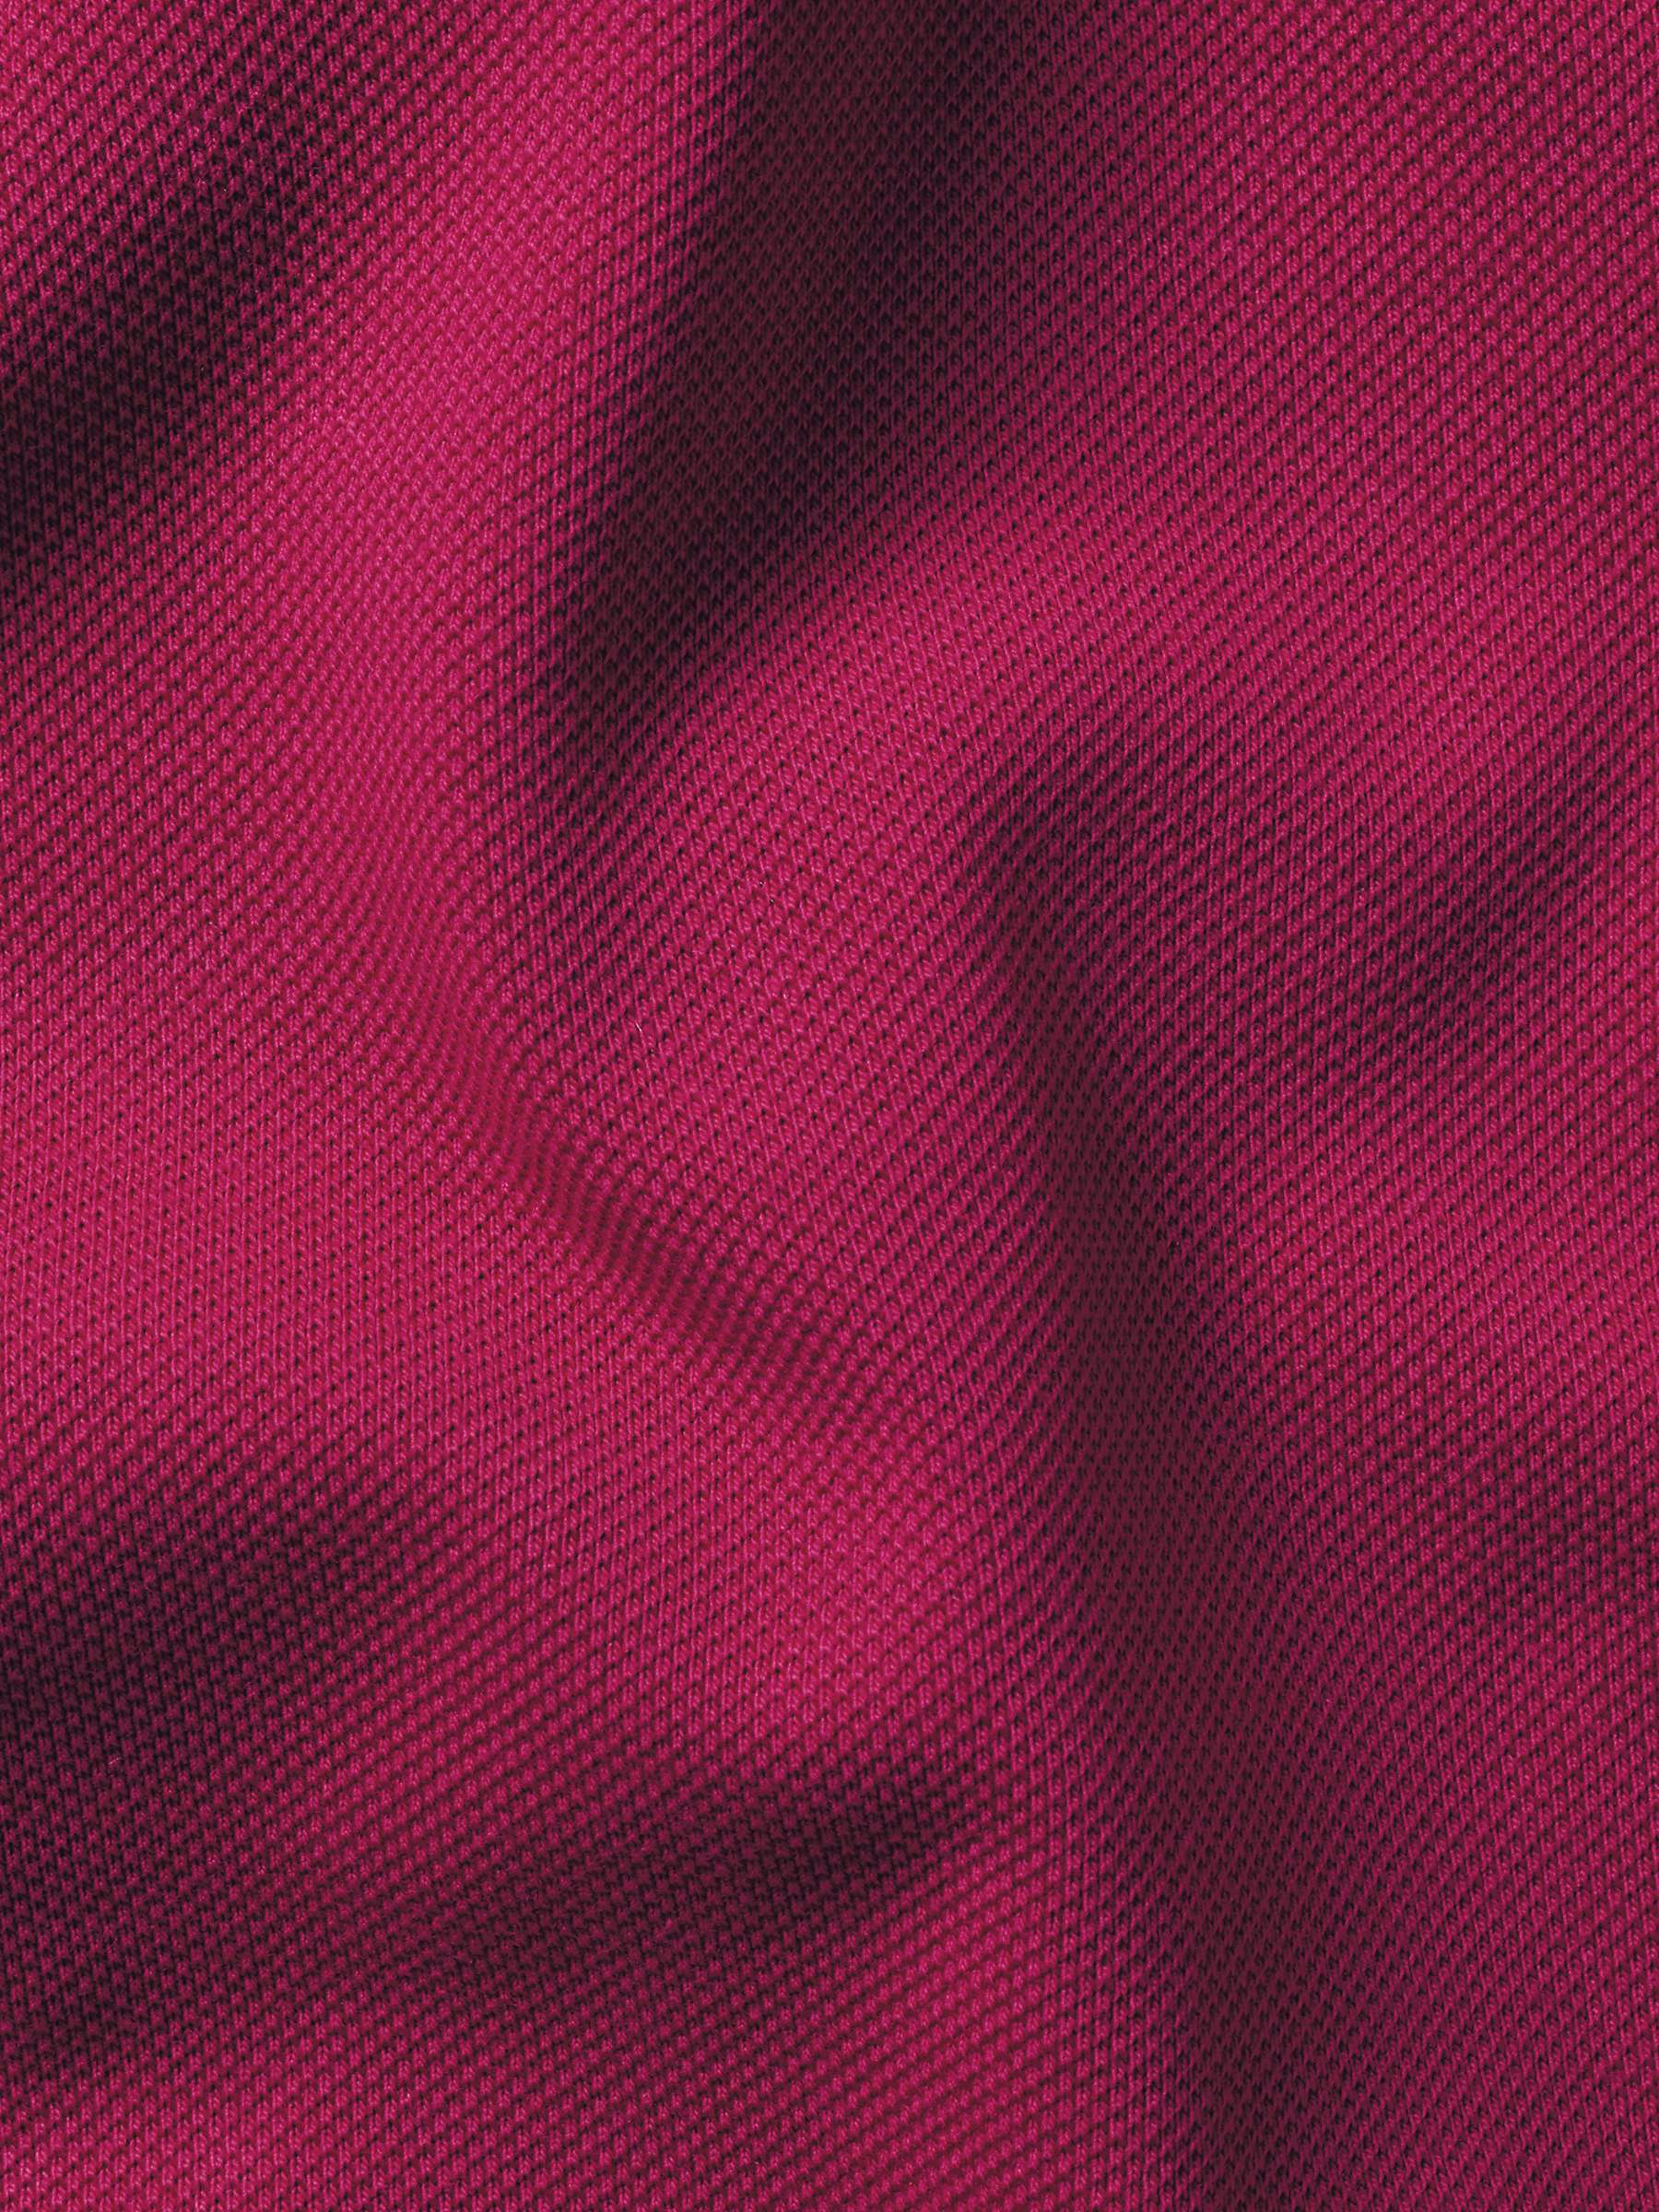 Buy Charles Tyrwhitt Short Sleeve Polo Shirt Online at johnlewis.com